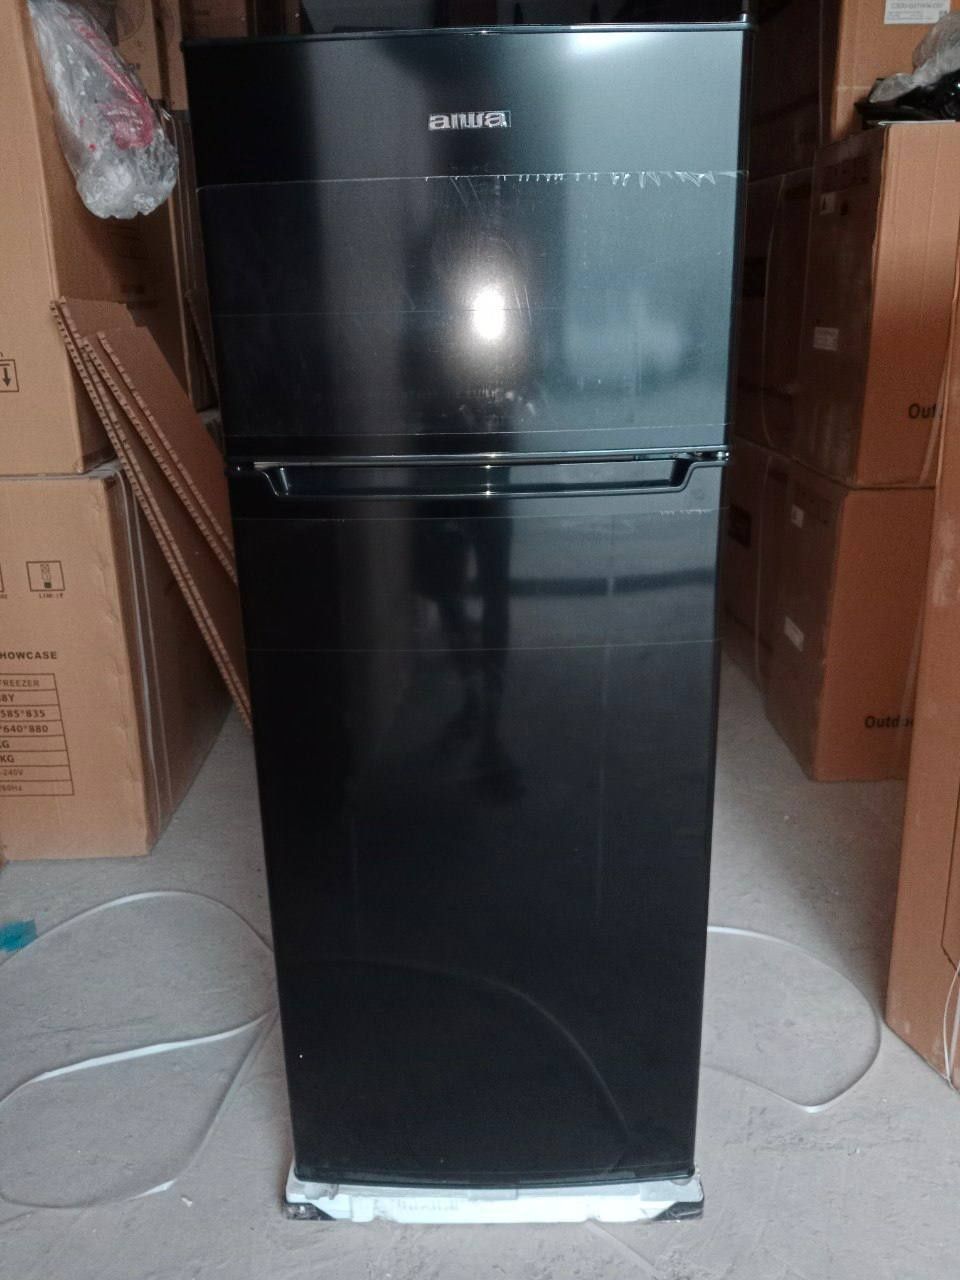 Холодильники AIWA 2 камерные оптом и в розницу